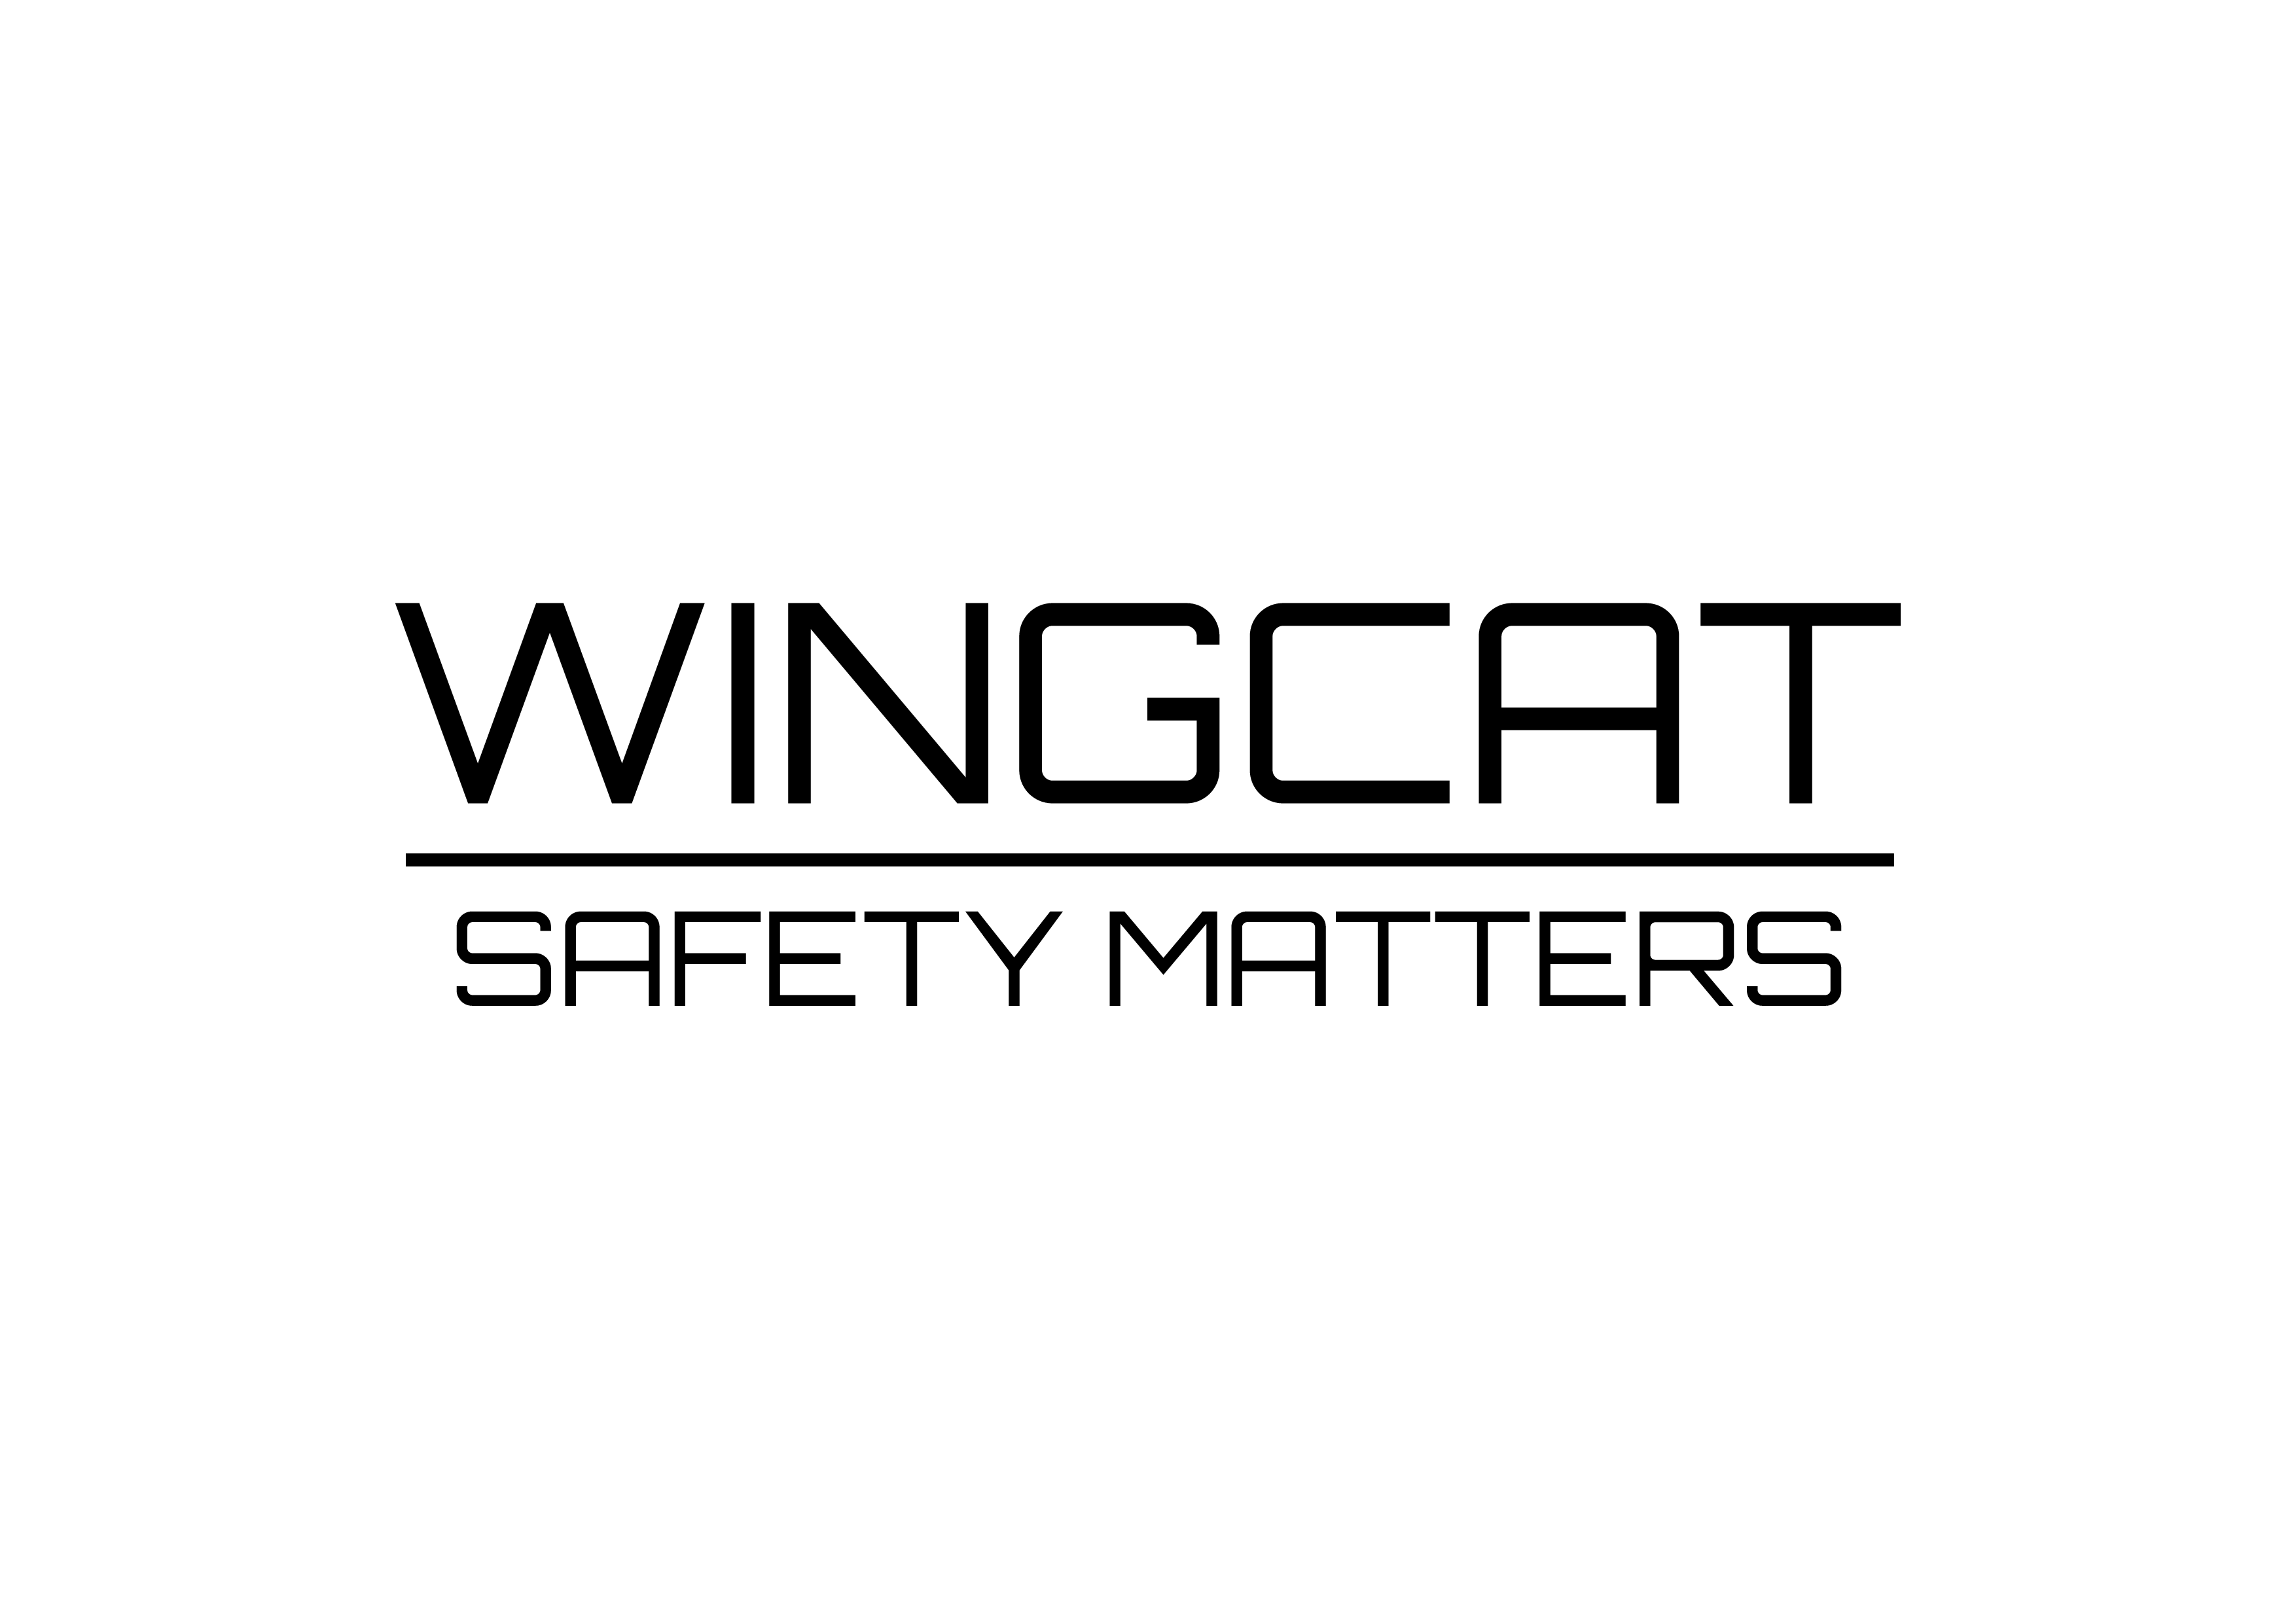 WINGCAT